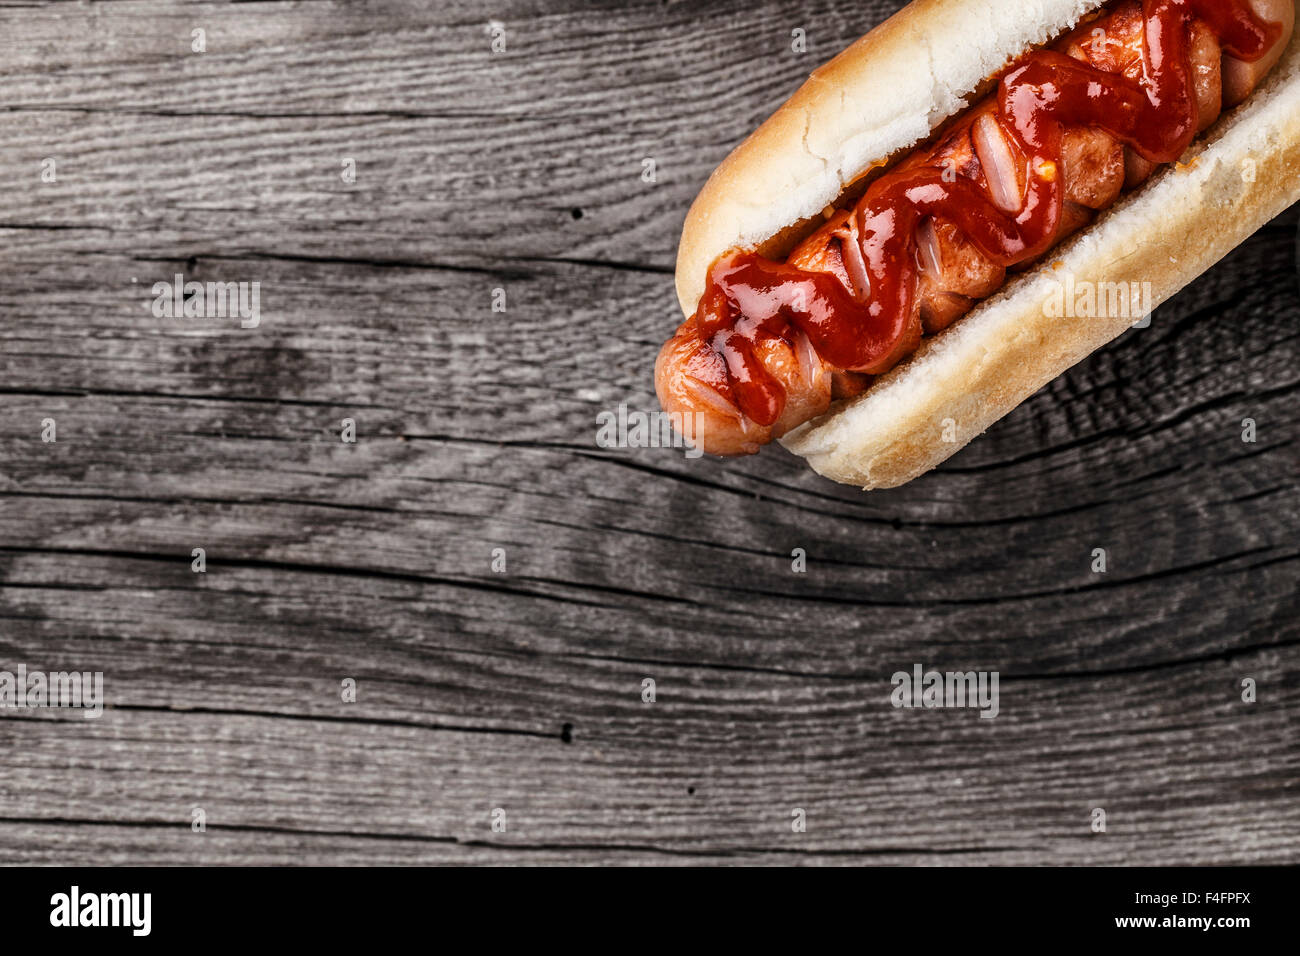 Hot-dog grillé au barbecue sur une planche en bois Banque D'Images